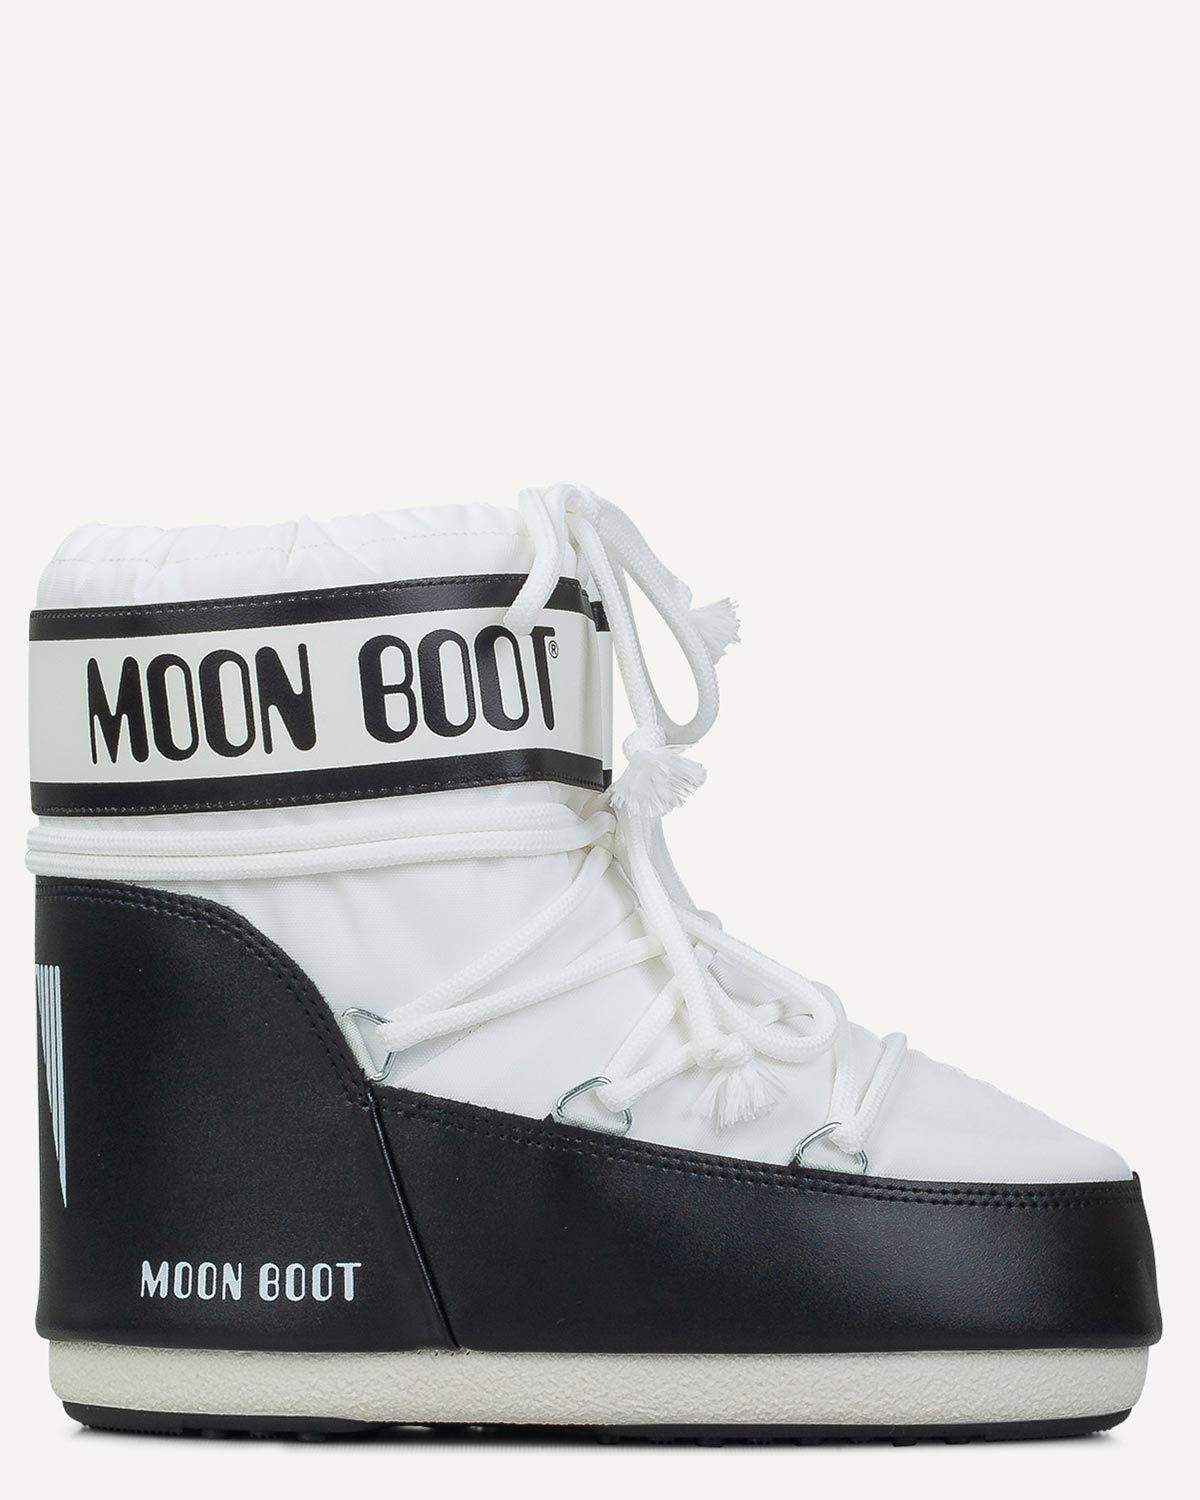 Γυναίκα - Μπότες - Μποτάκια - Moonboot Λευκό